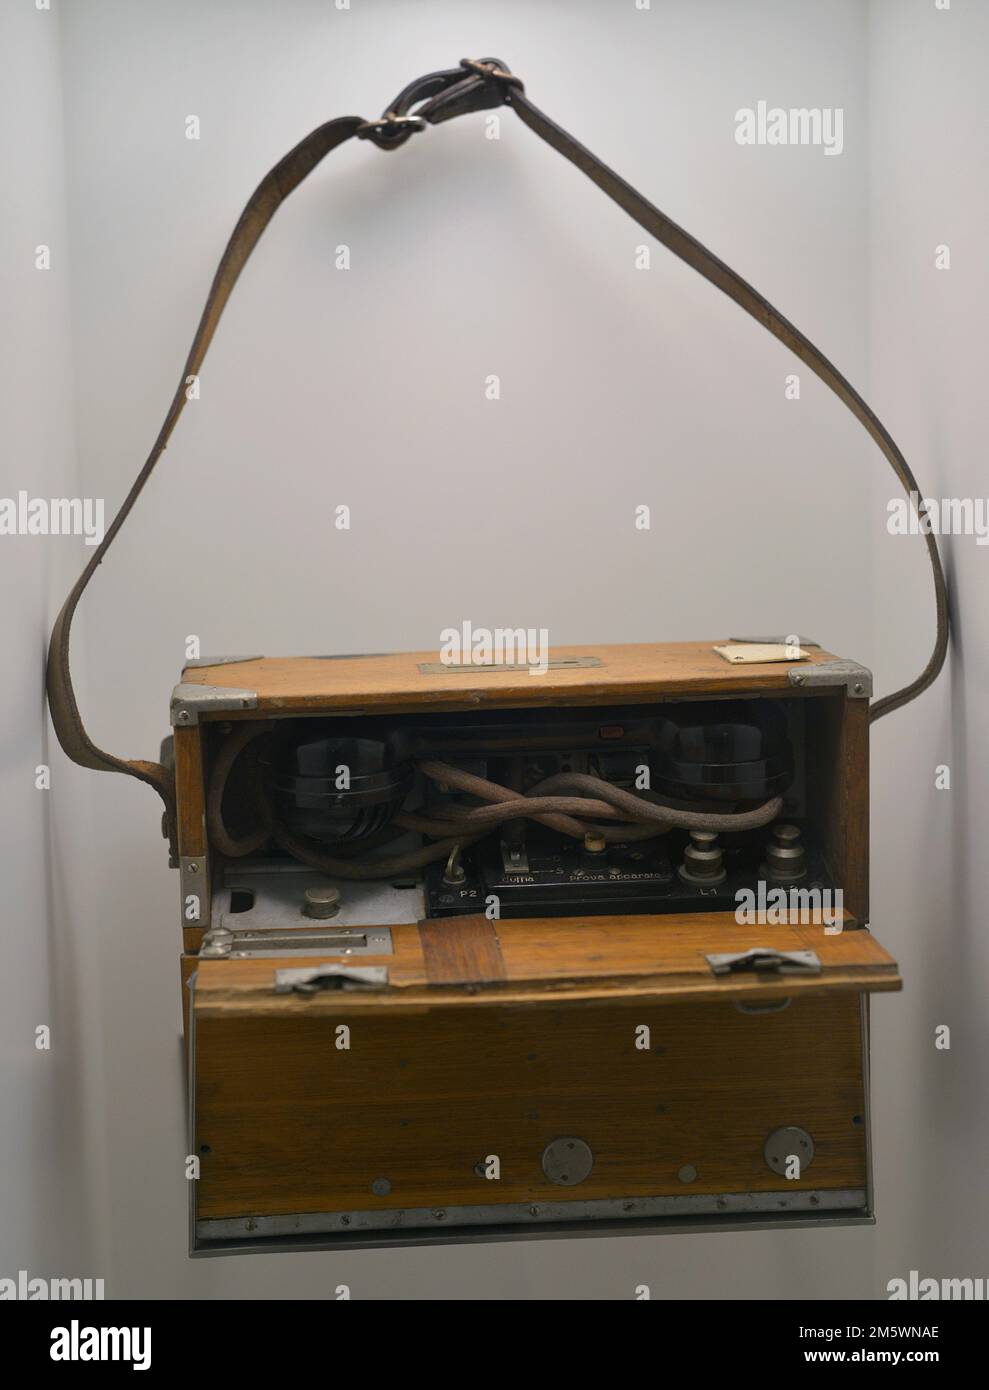 Spanischer Bürgerkrieg (1936-1939). Feldtelefon, c. 1936. Italienische Herstellung. Holz, Metall und Bakelit. Armeemuseum. Toledo, Spanien. Stockfoto